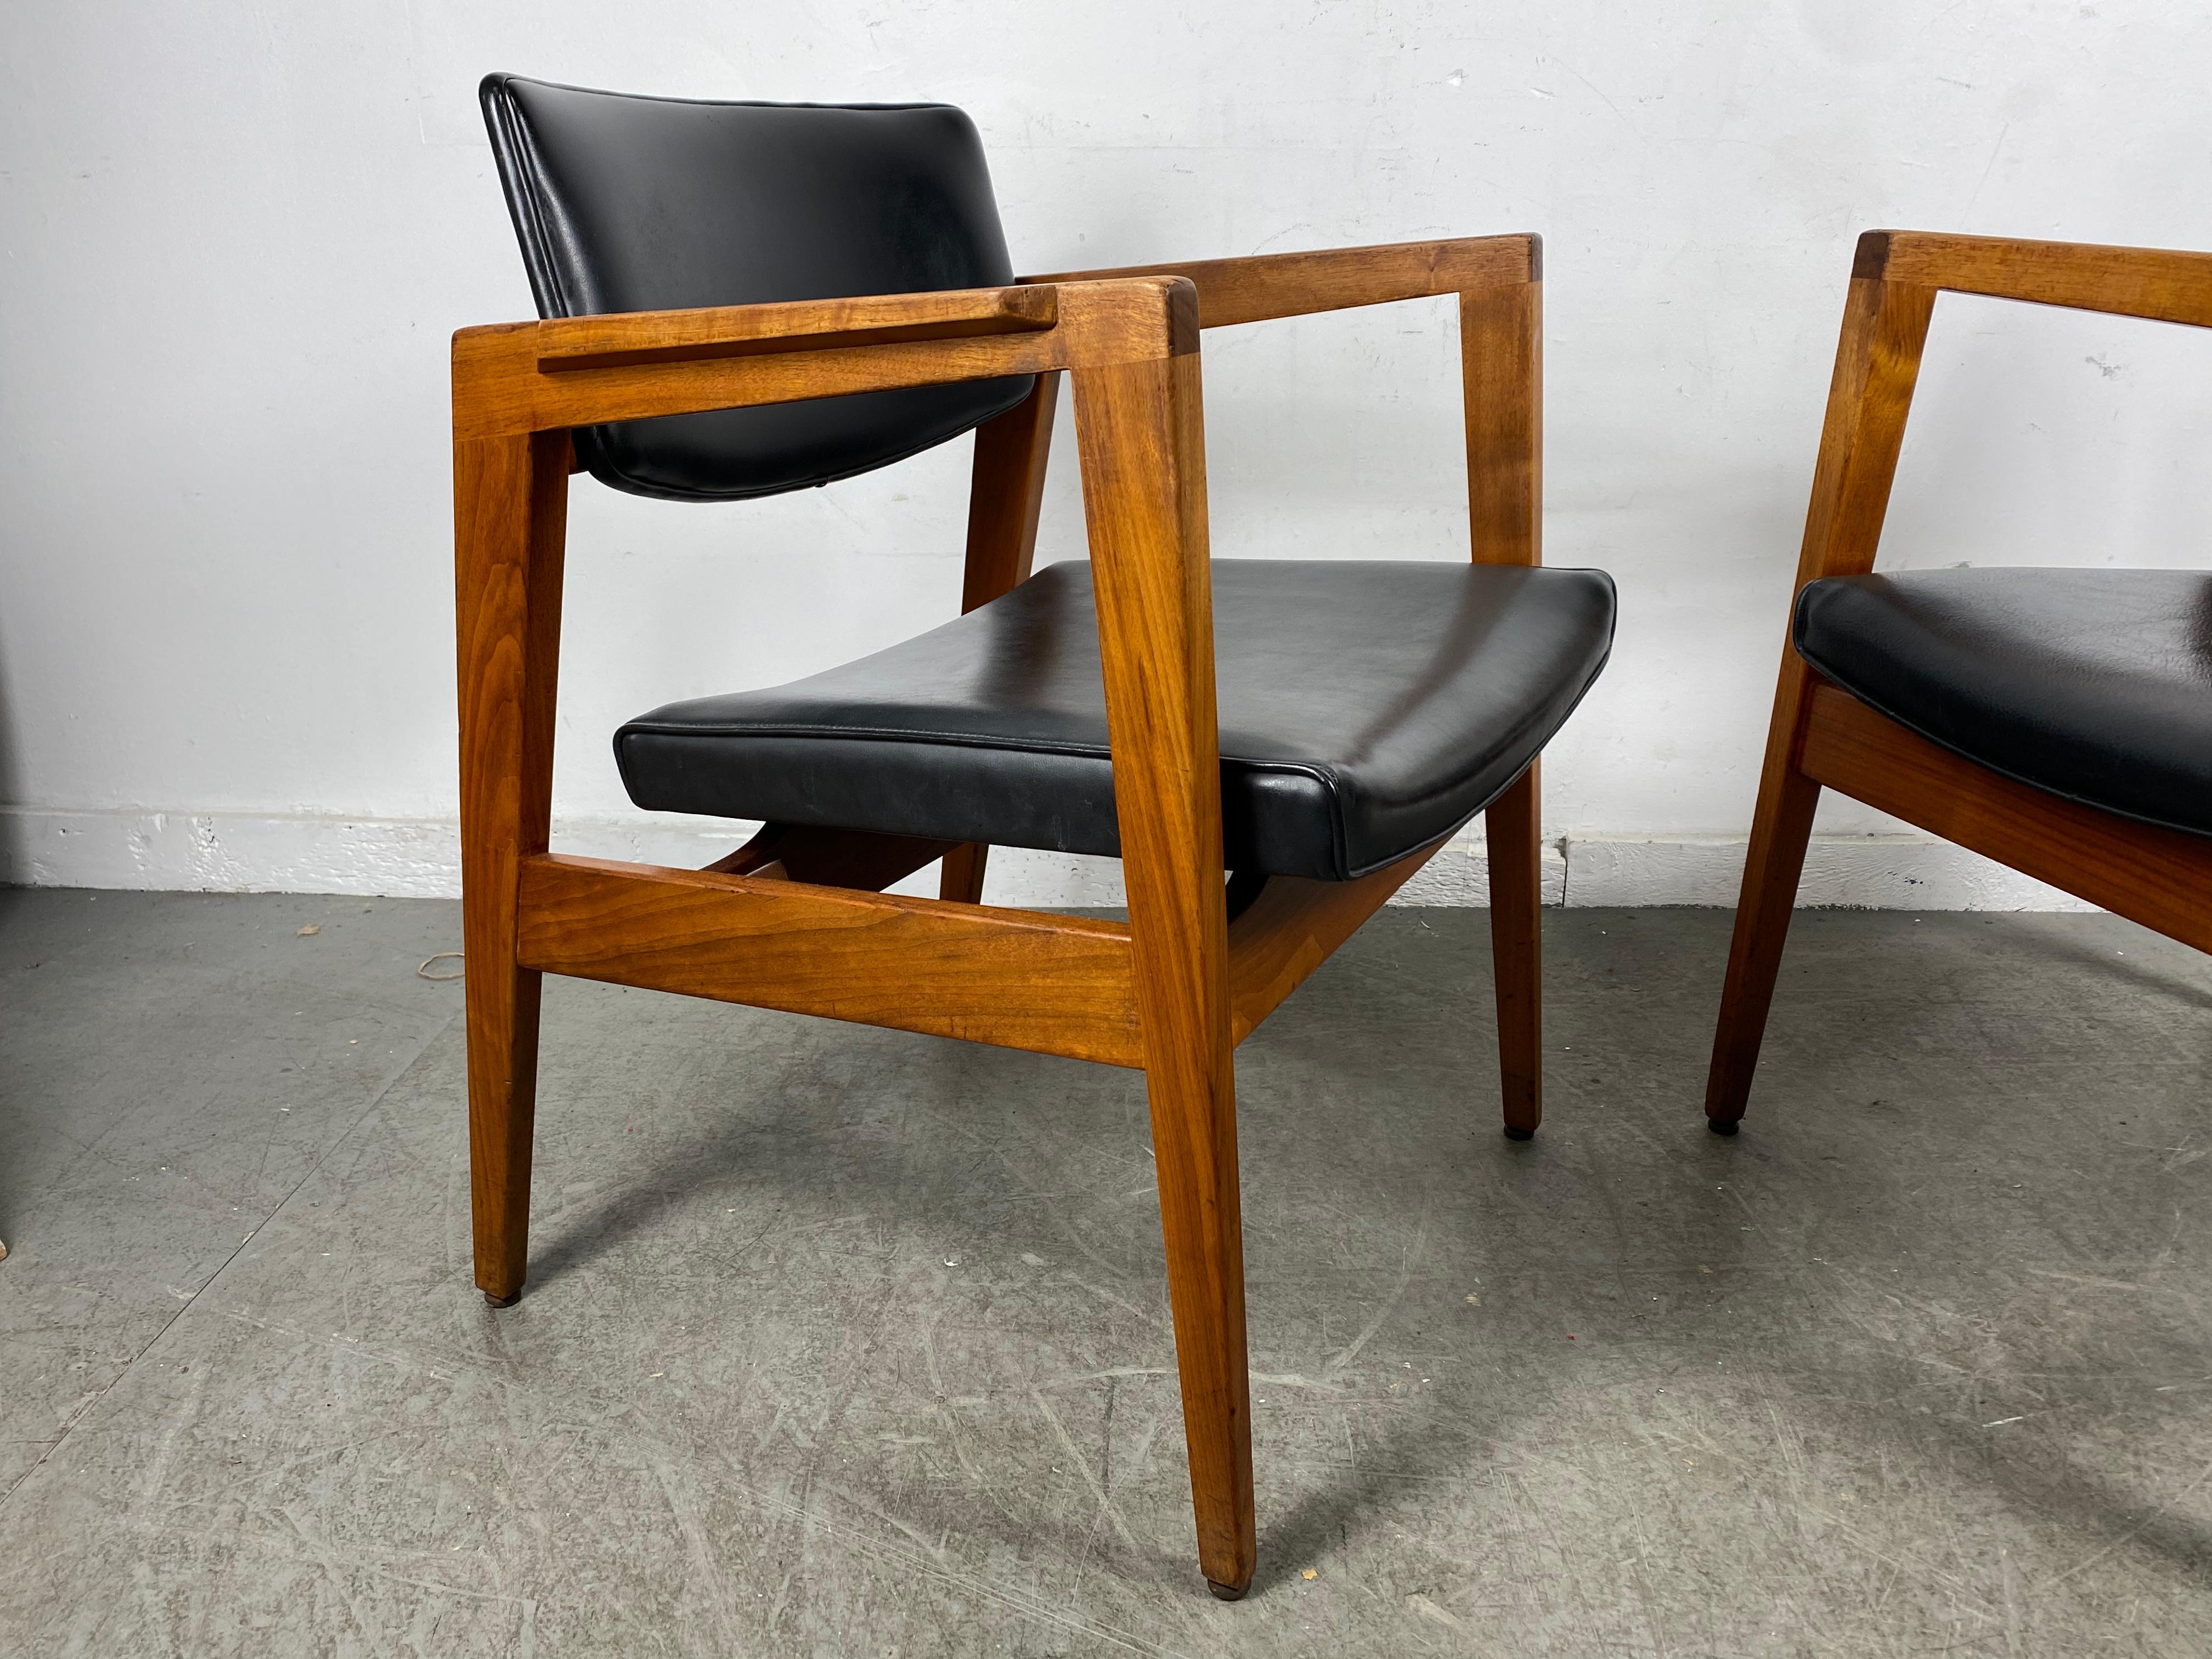 Paire de chaises de salon classiques modernes du milieu du siècle, en noyer massif et cuir, fabriquées par la société W.H. Gunlocke. Conçues à la manière de Jens Risom. Qualité et construction supérieures, extrêmement confortables, toutes d'origine,